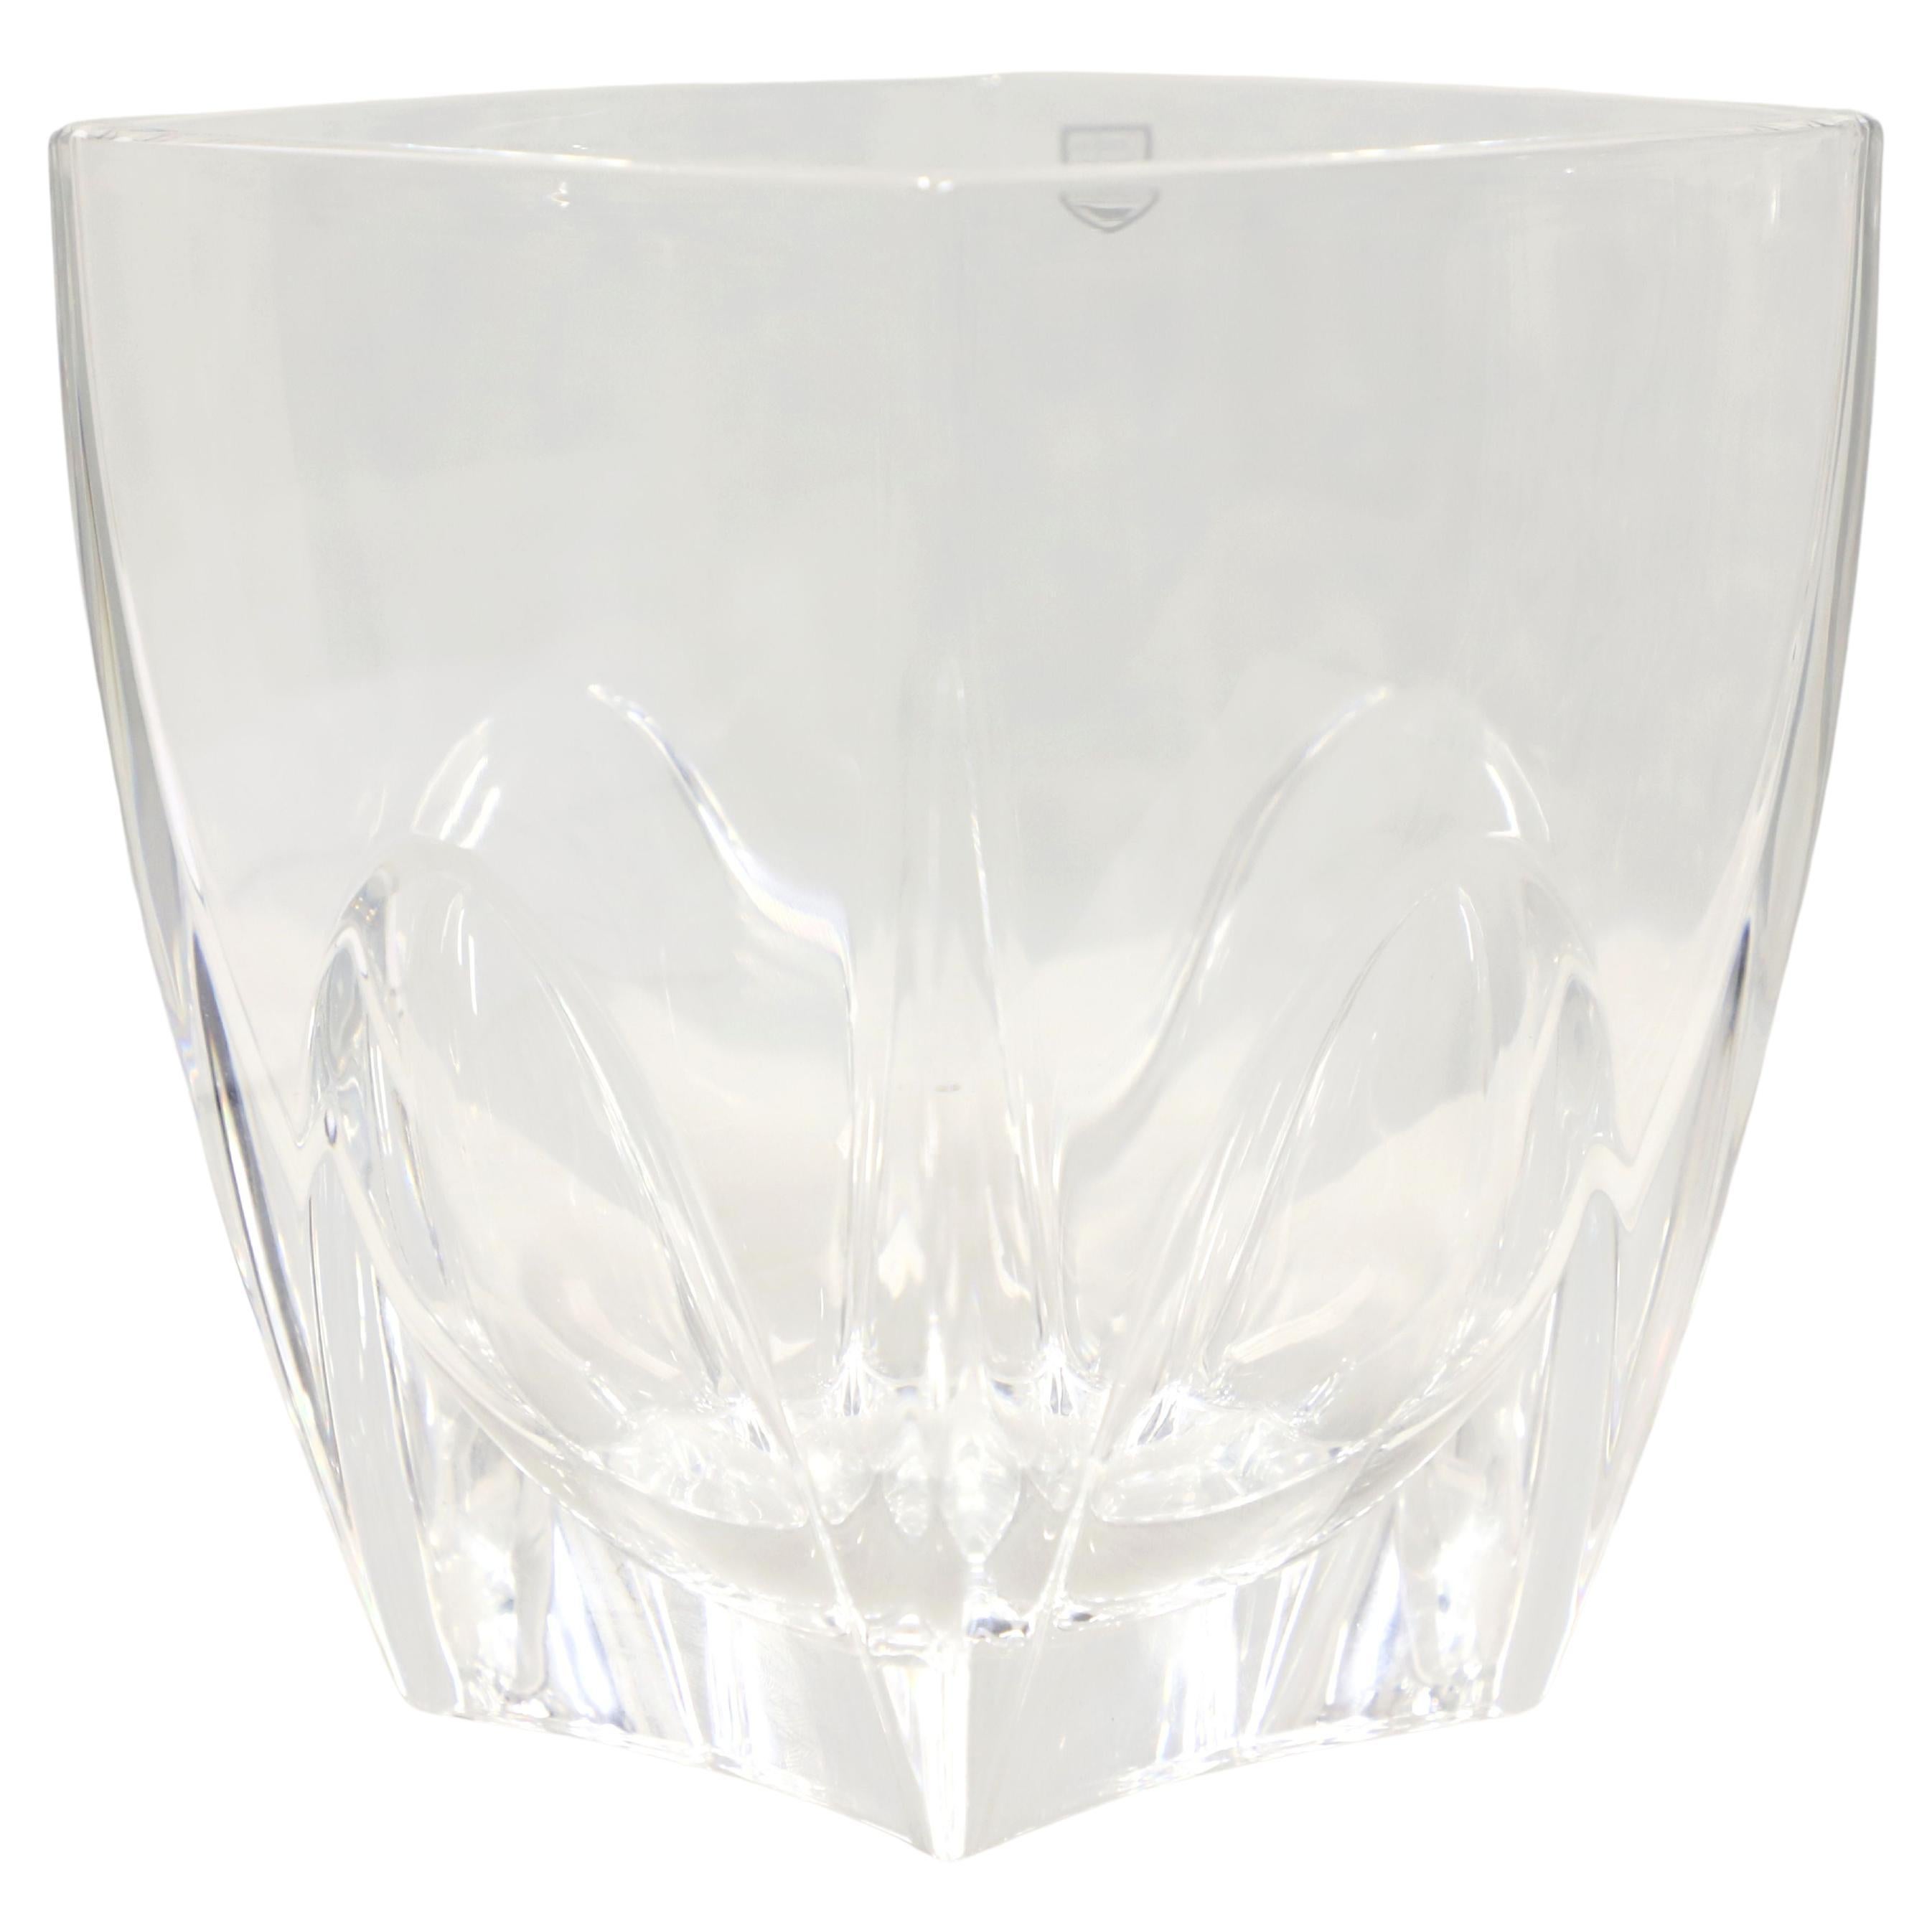 ORREFORS Sweden 7" Square Clear Crystal Vase - A For Sale